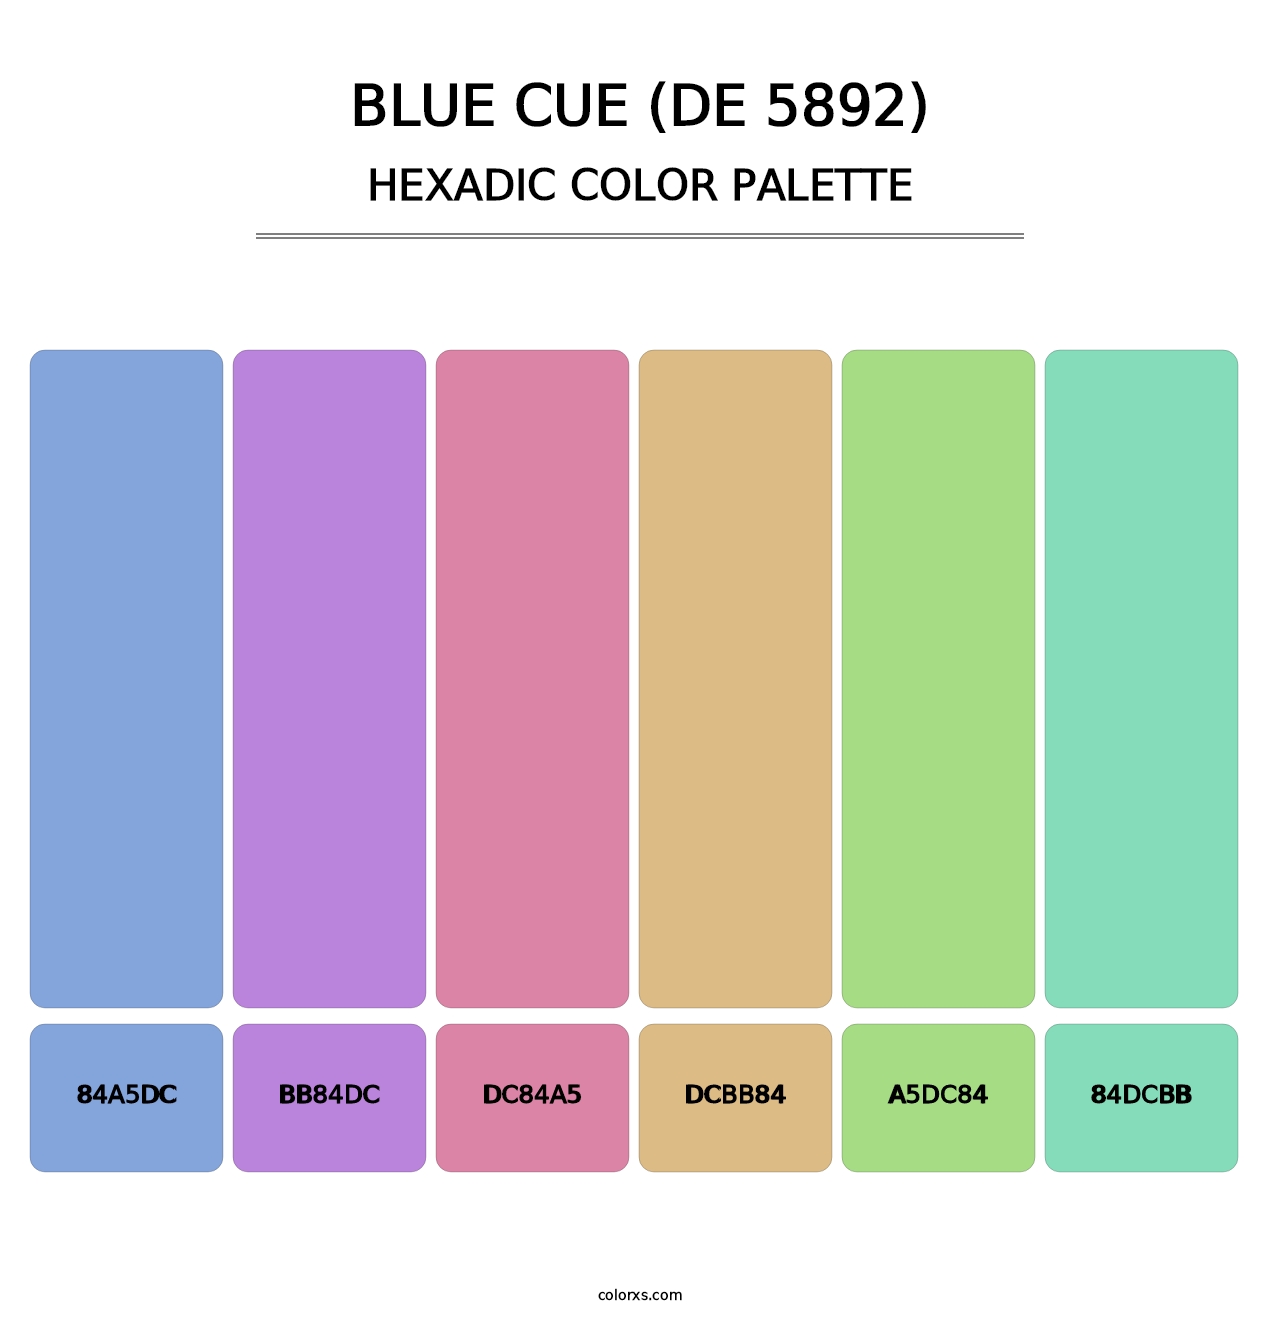 Blue Cue (DE 5892) - Hexadic Color Palette